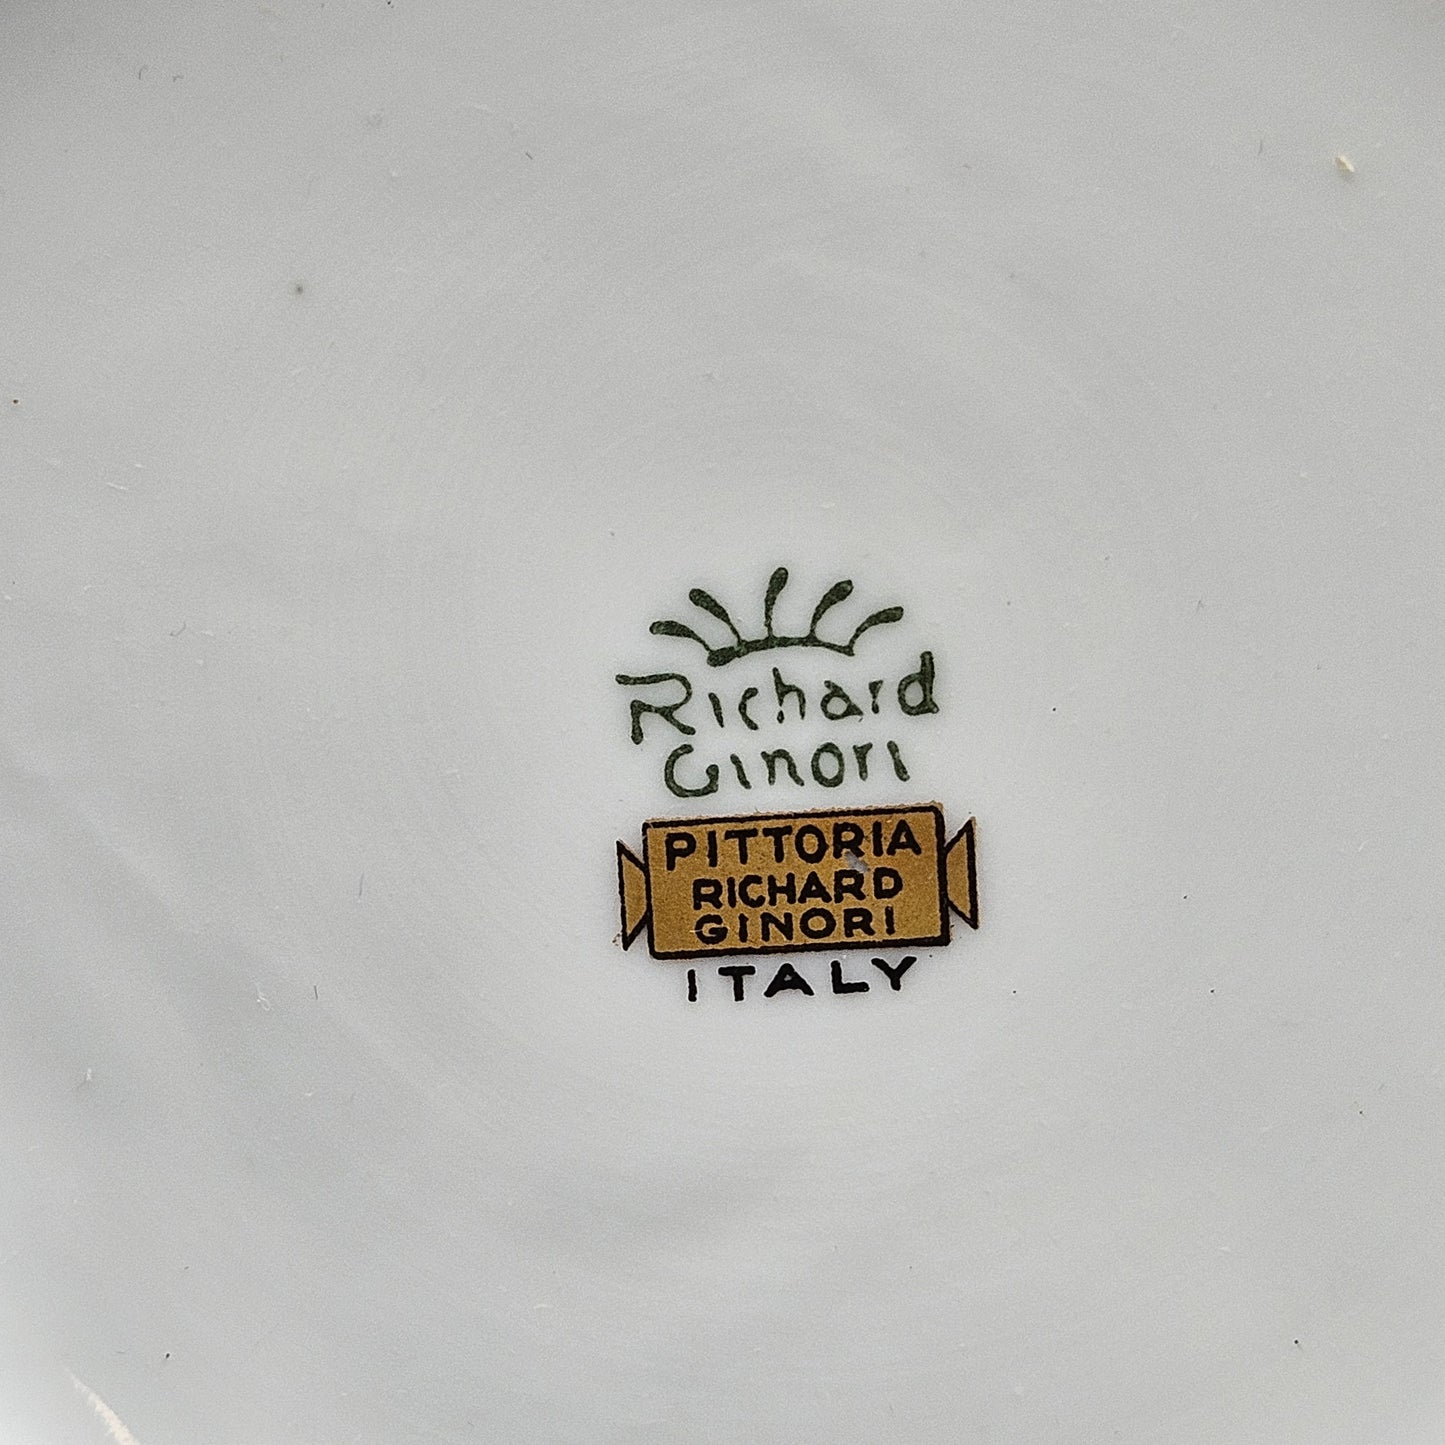 Vintage Richard Ginori Italian Porcelain Pompei Gold Sugar / Mustard Jar with Rose Finial